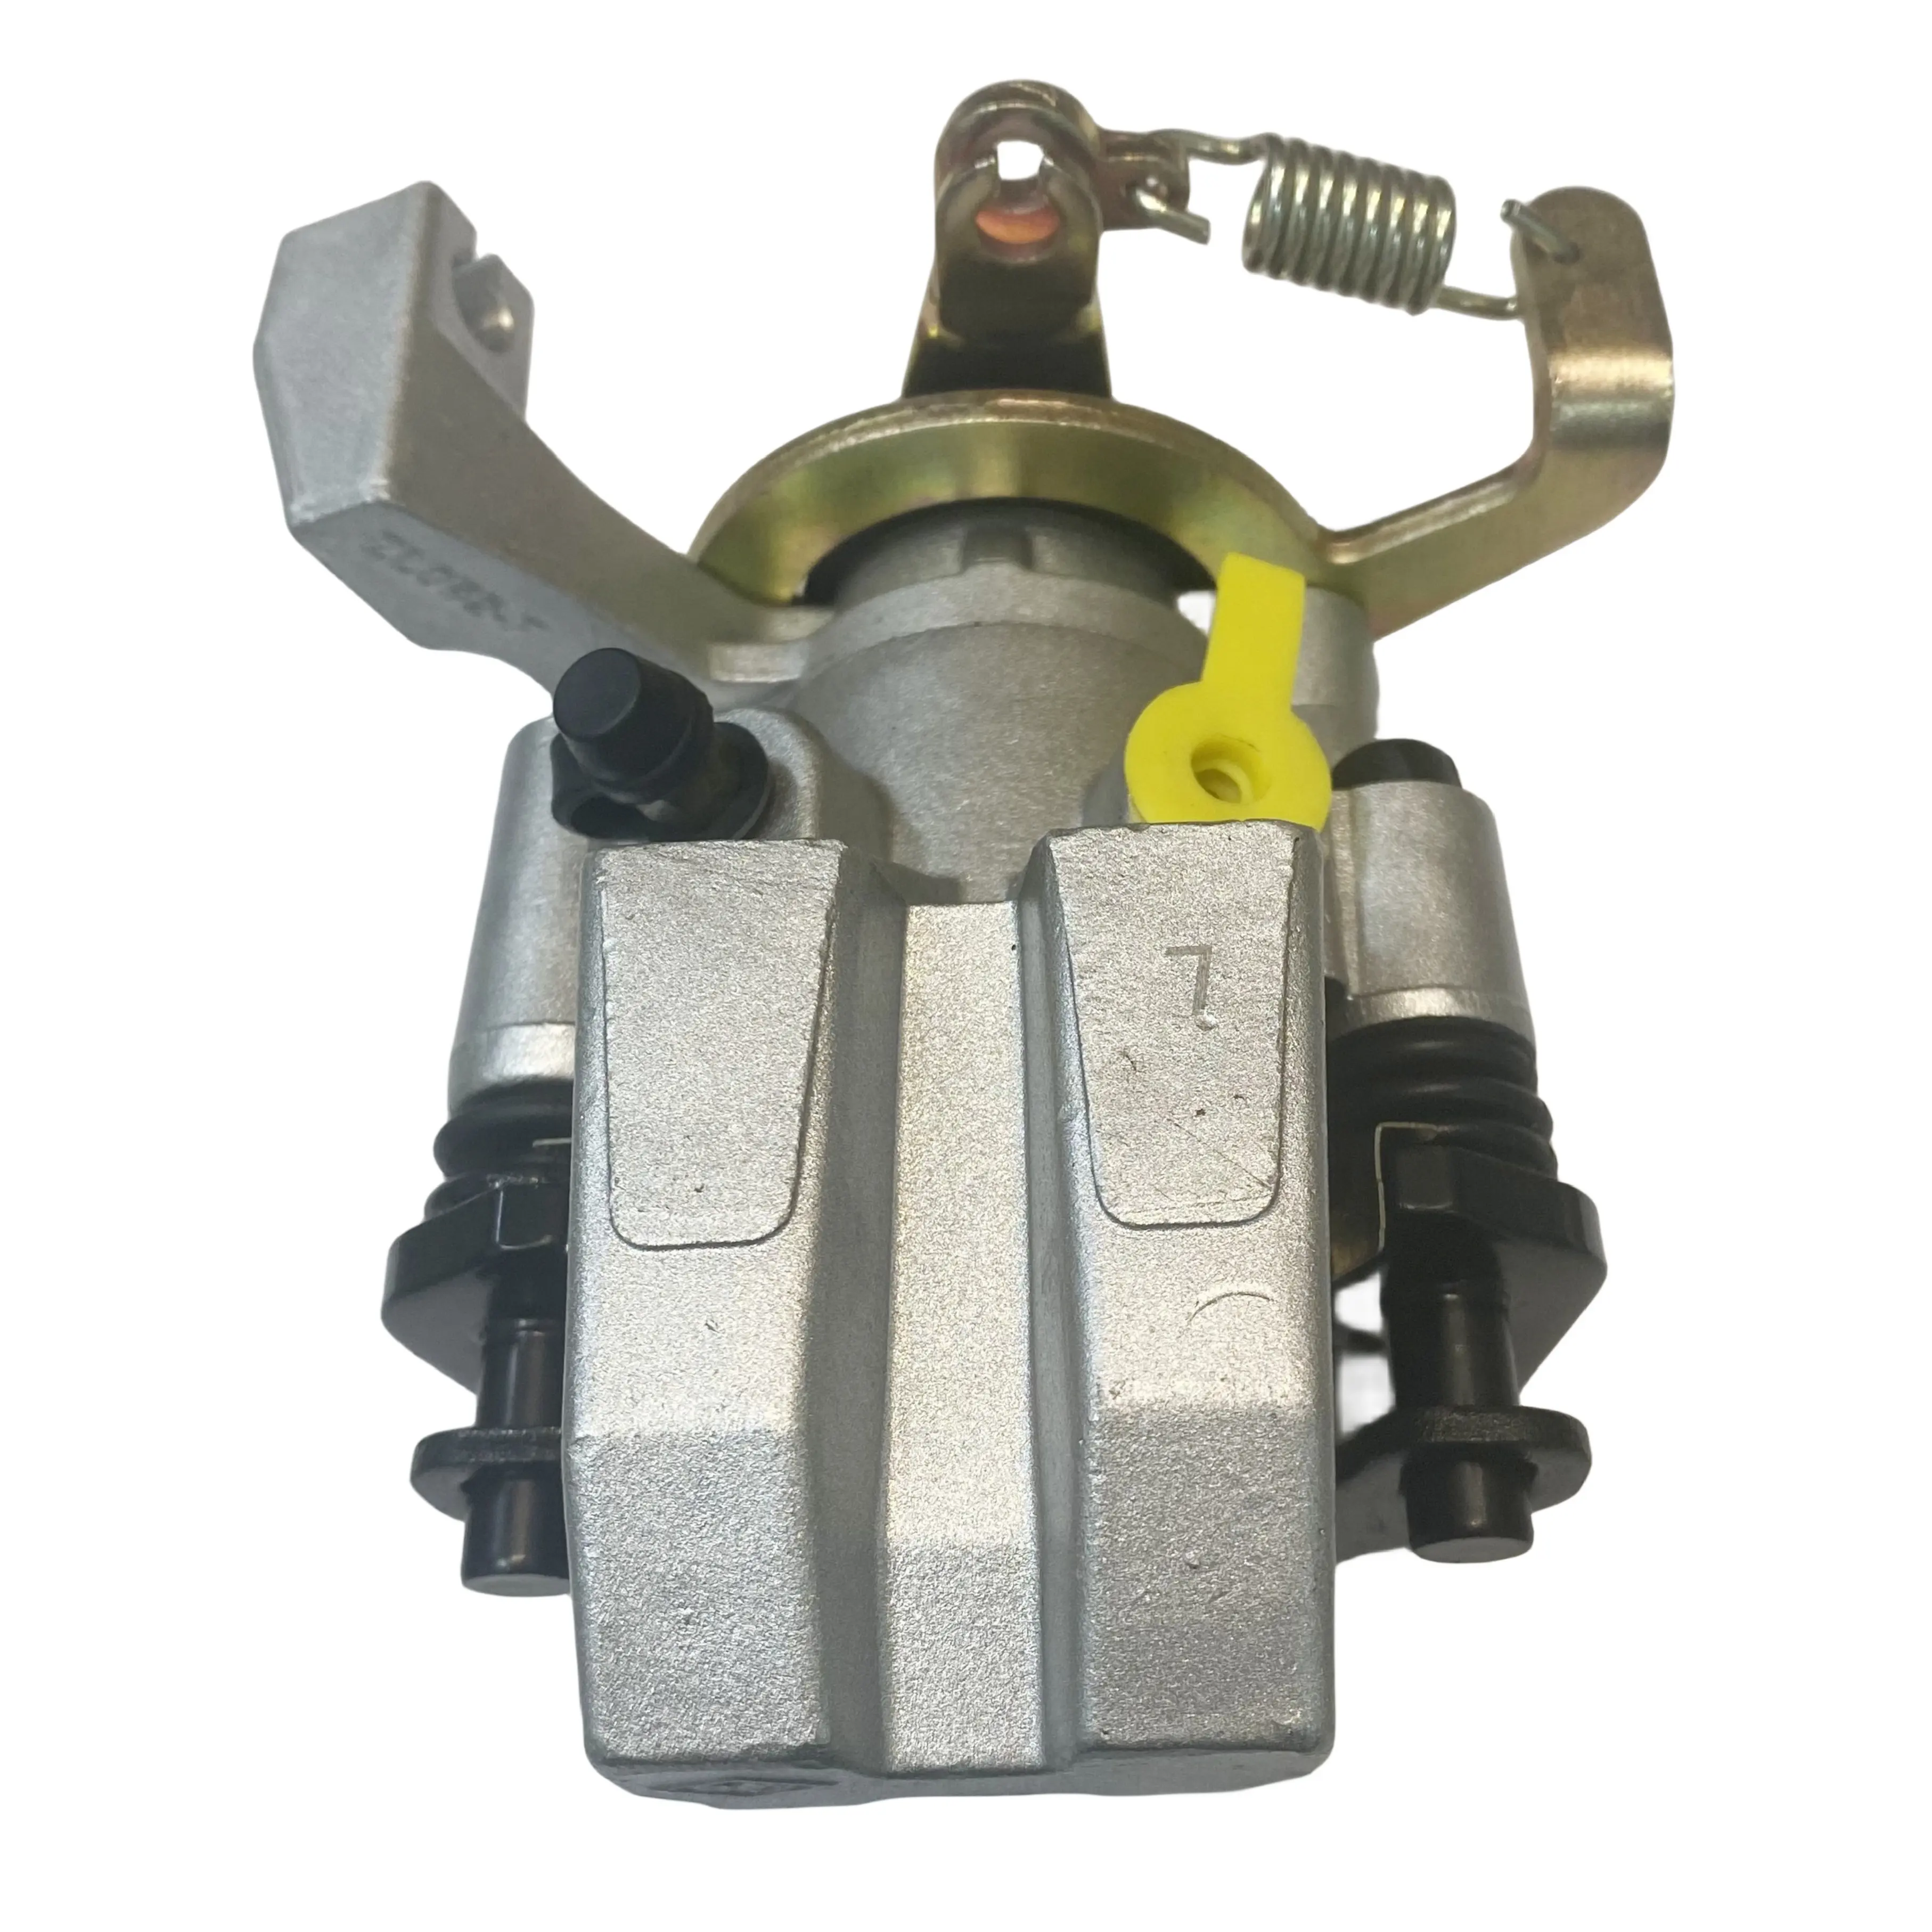 CF MOTO Direct ATV Parts UTV Parts Rear Caliper 7030-81500 C FORCE 450 520 625 850 1000